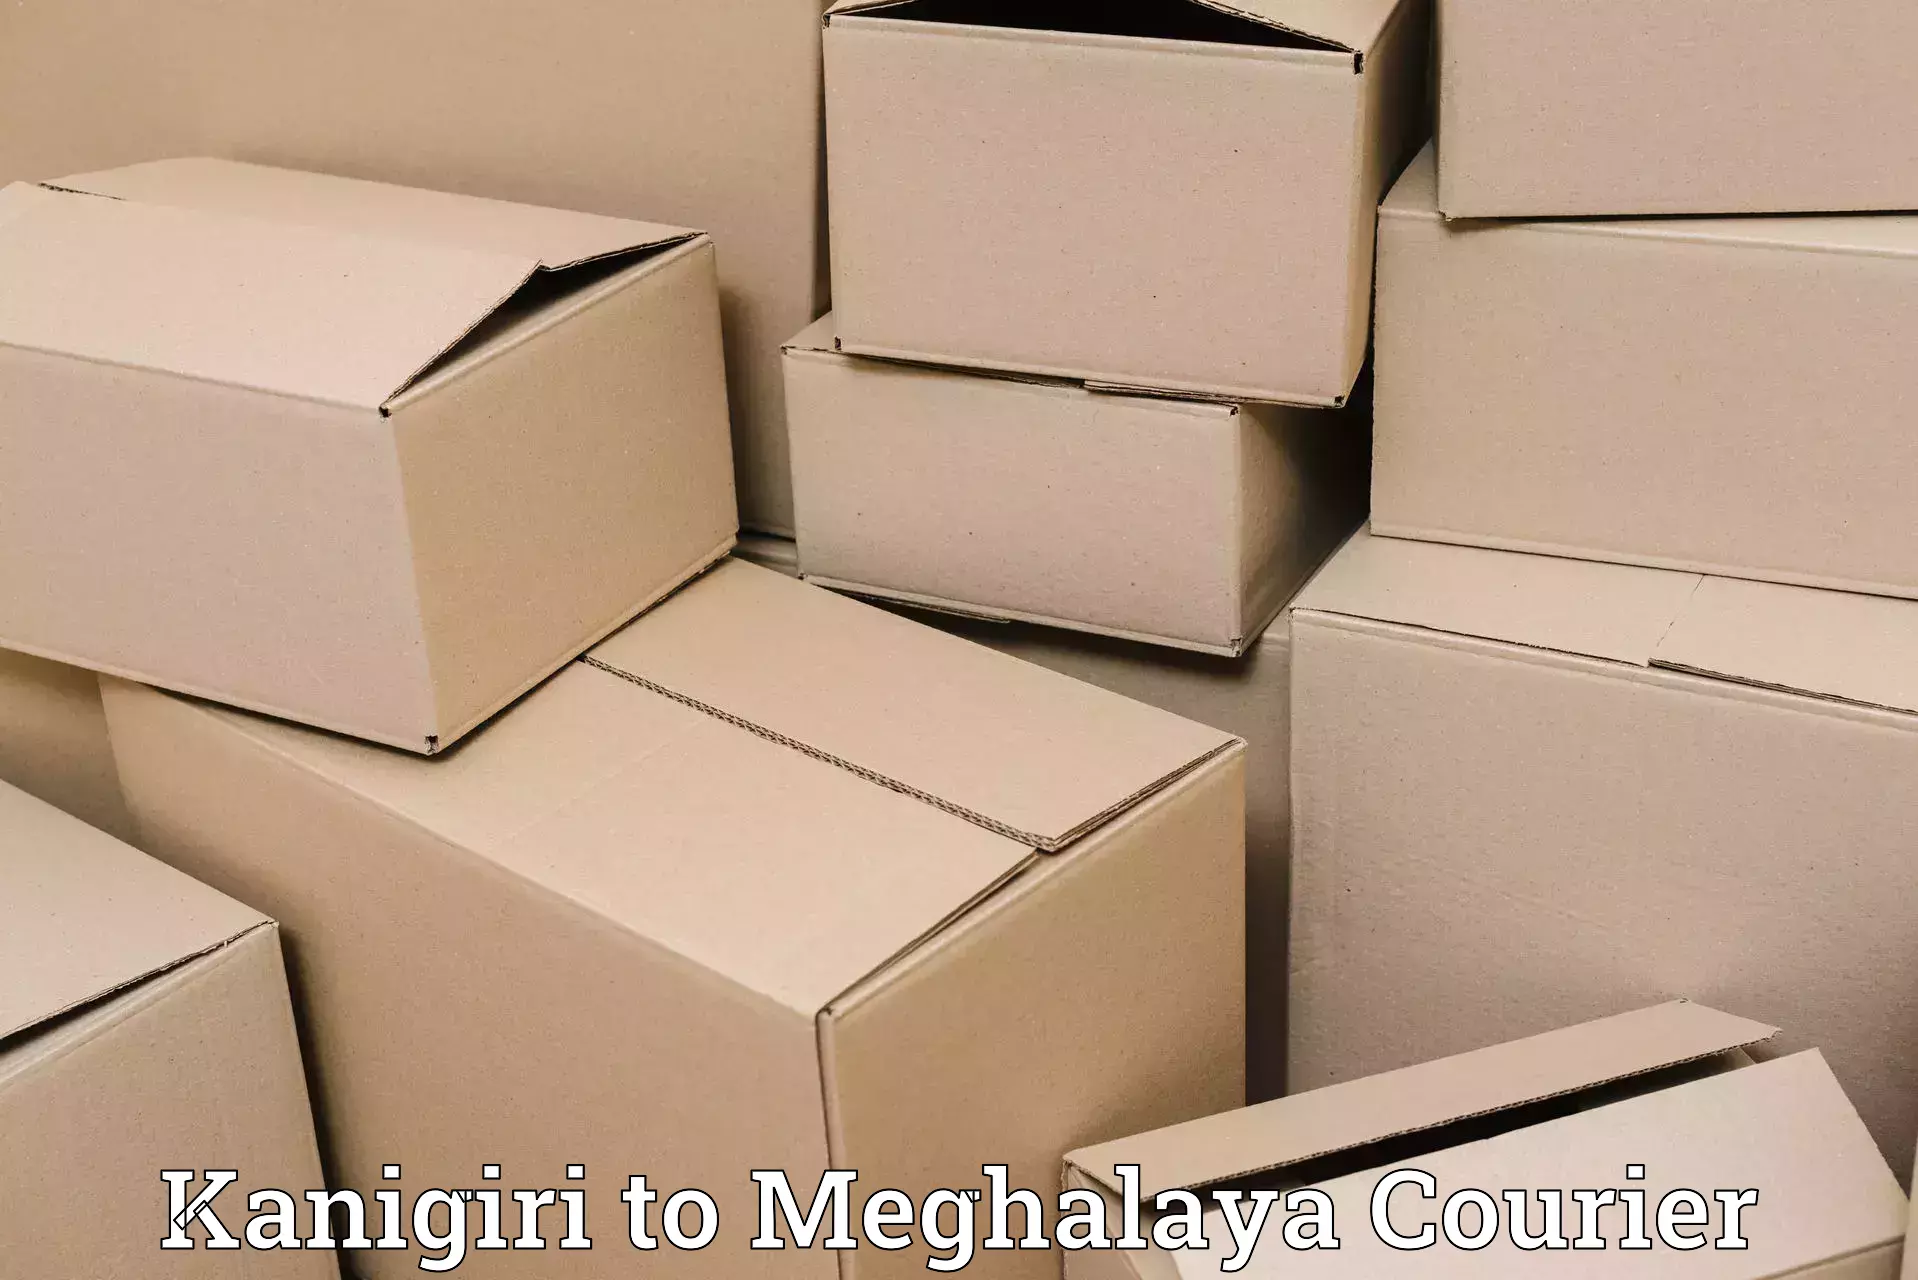 Express shipping in Kanigiri to NIT Meghalaya